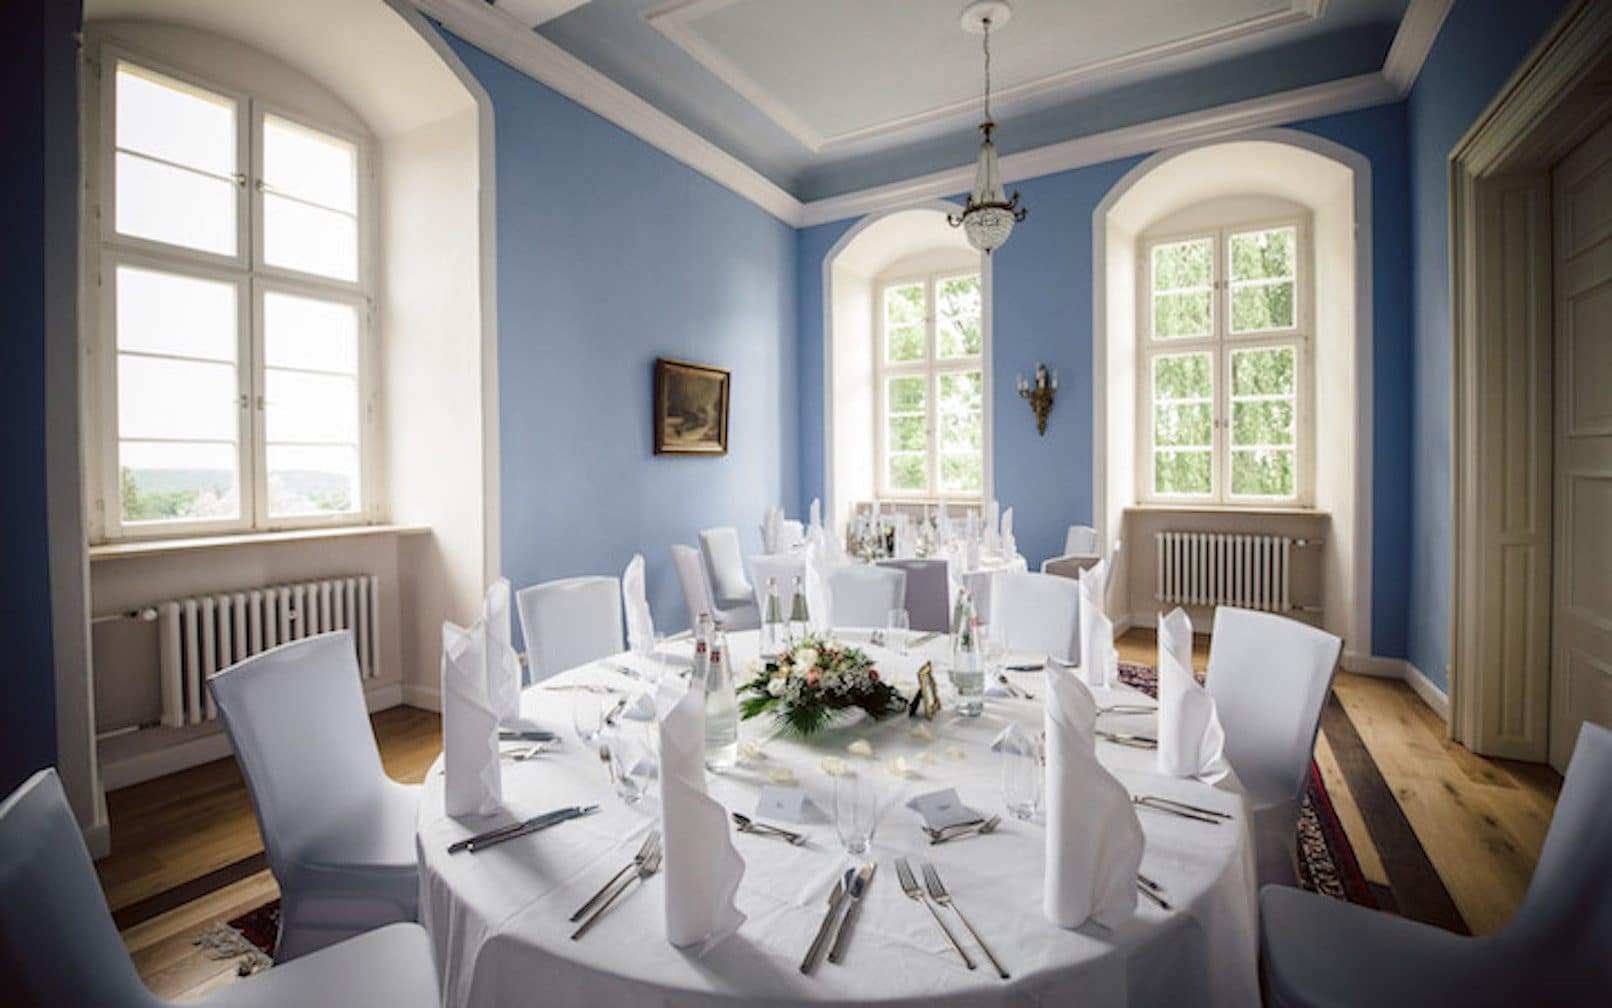 Gedeckter Hochzeitstisch im Brautzimmer. Blaue Wände zeichnen sich im Brautzimmer aus.